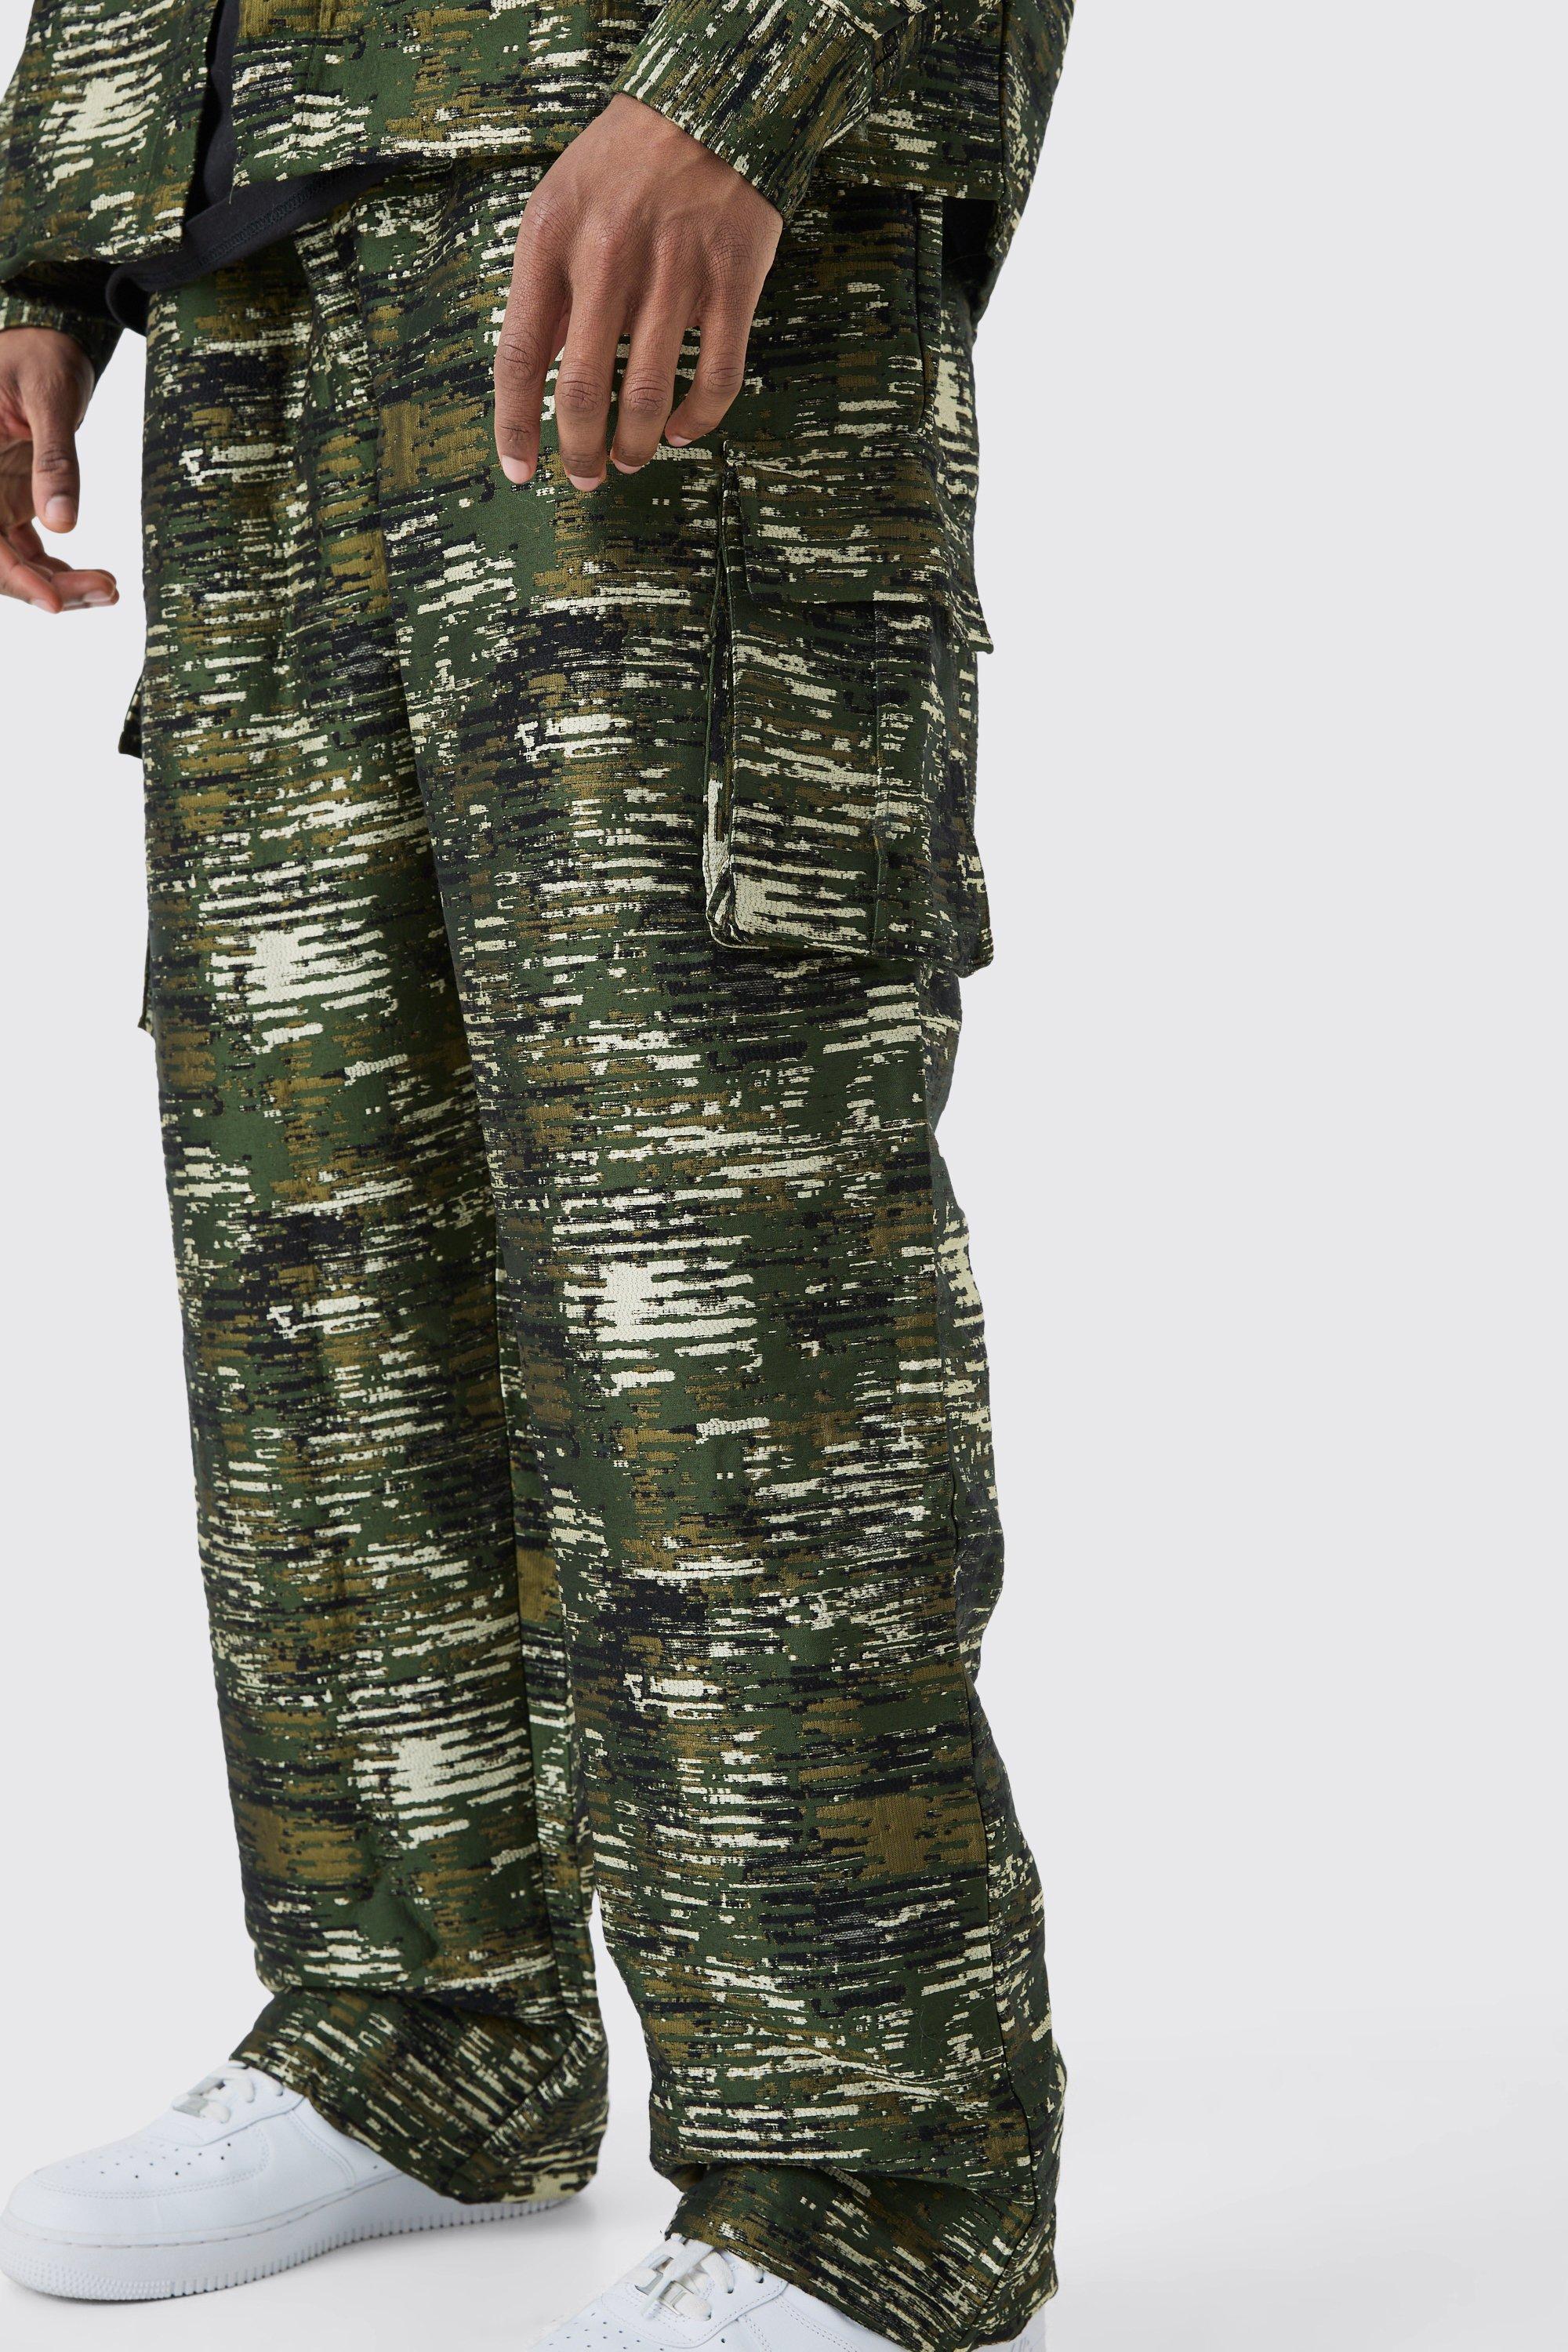 tall - pantalon cargo large texturé à imprimé camouflage homme - xl, camo